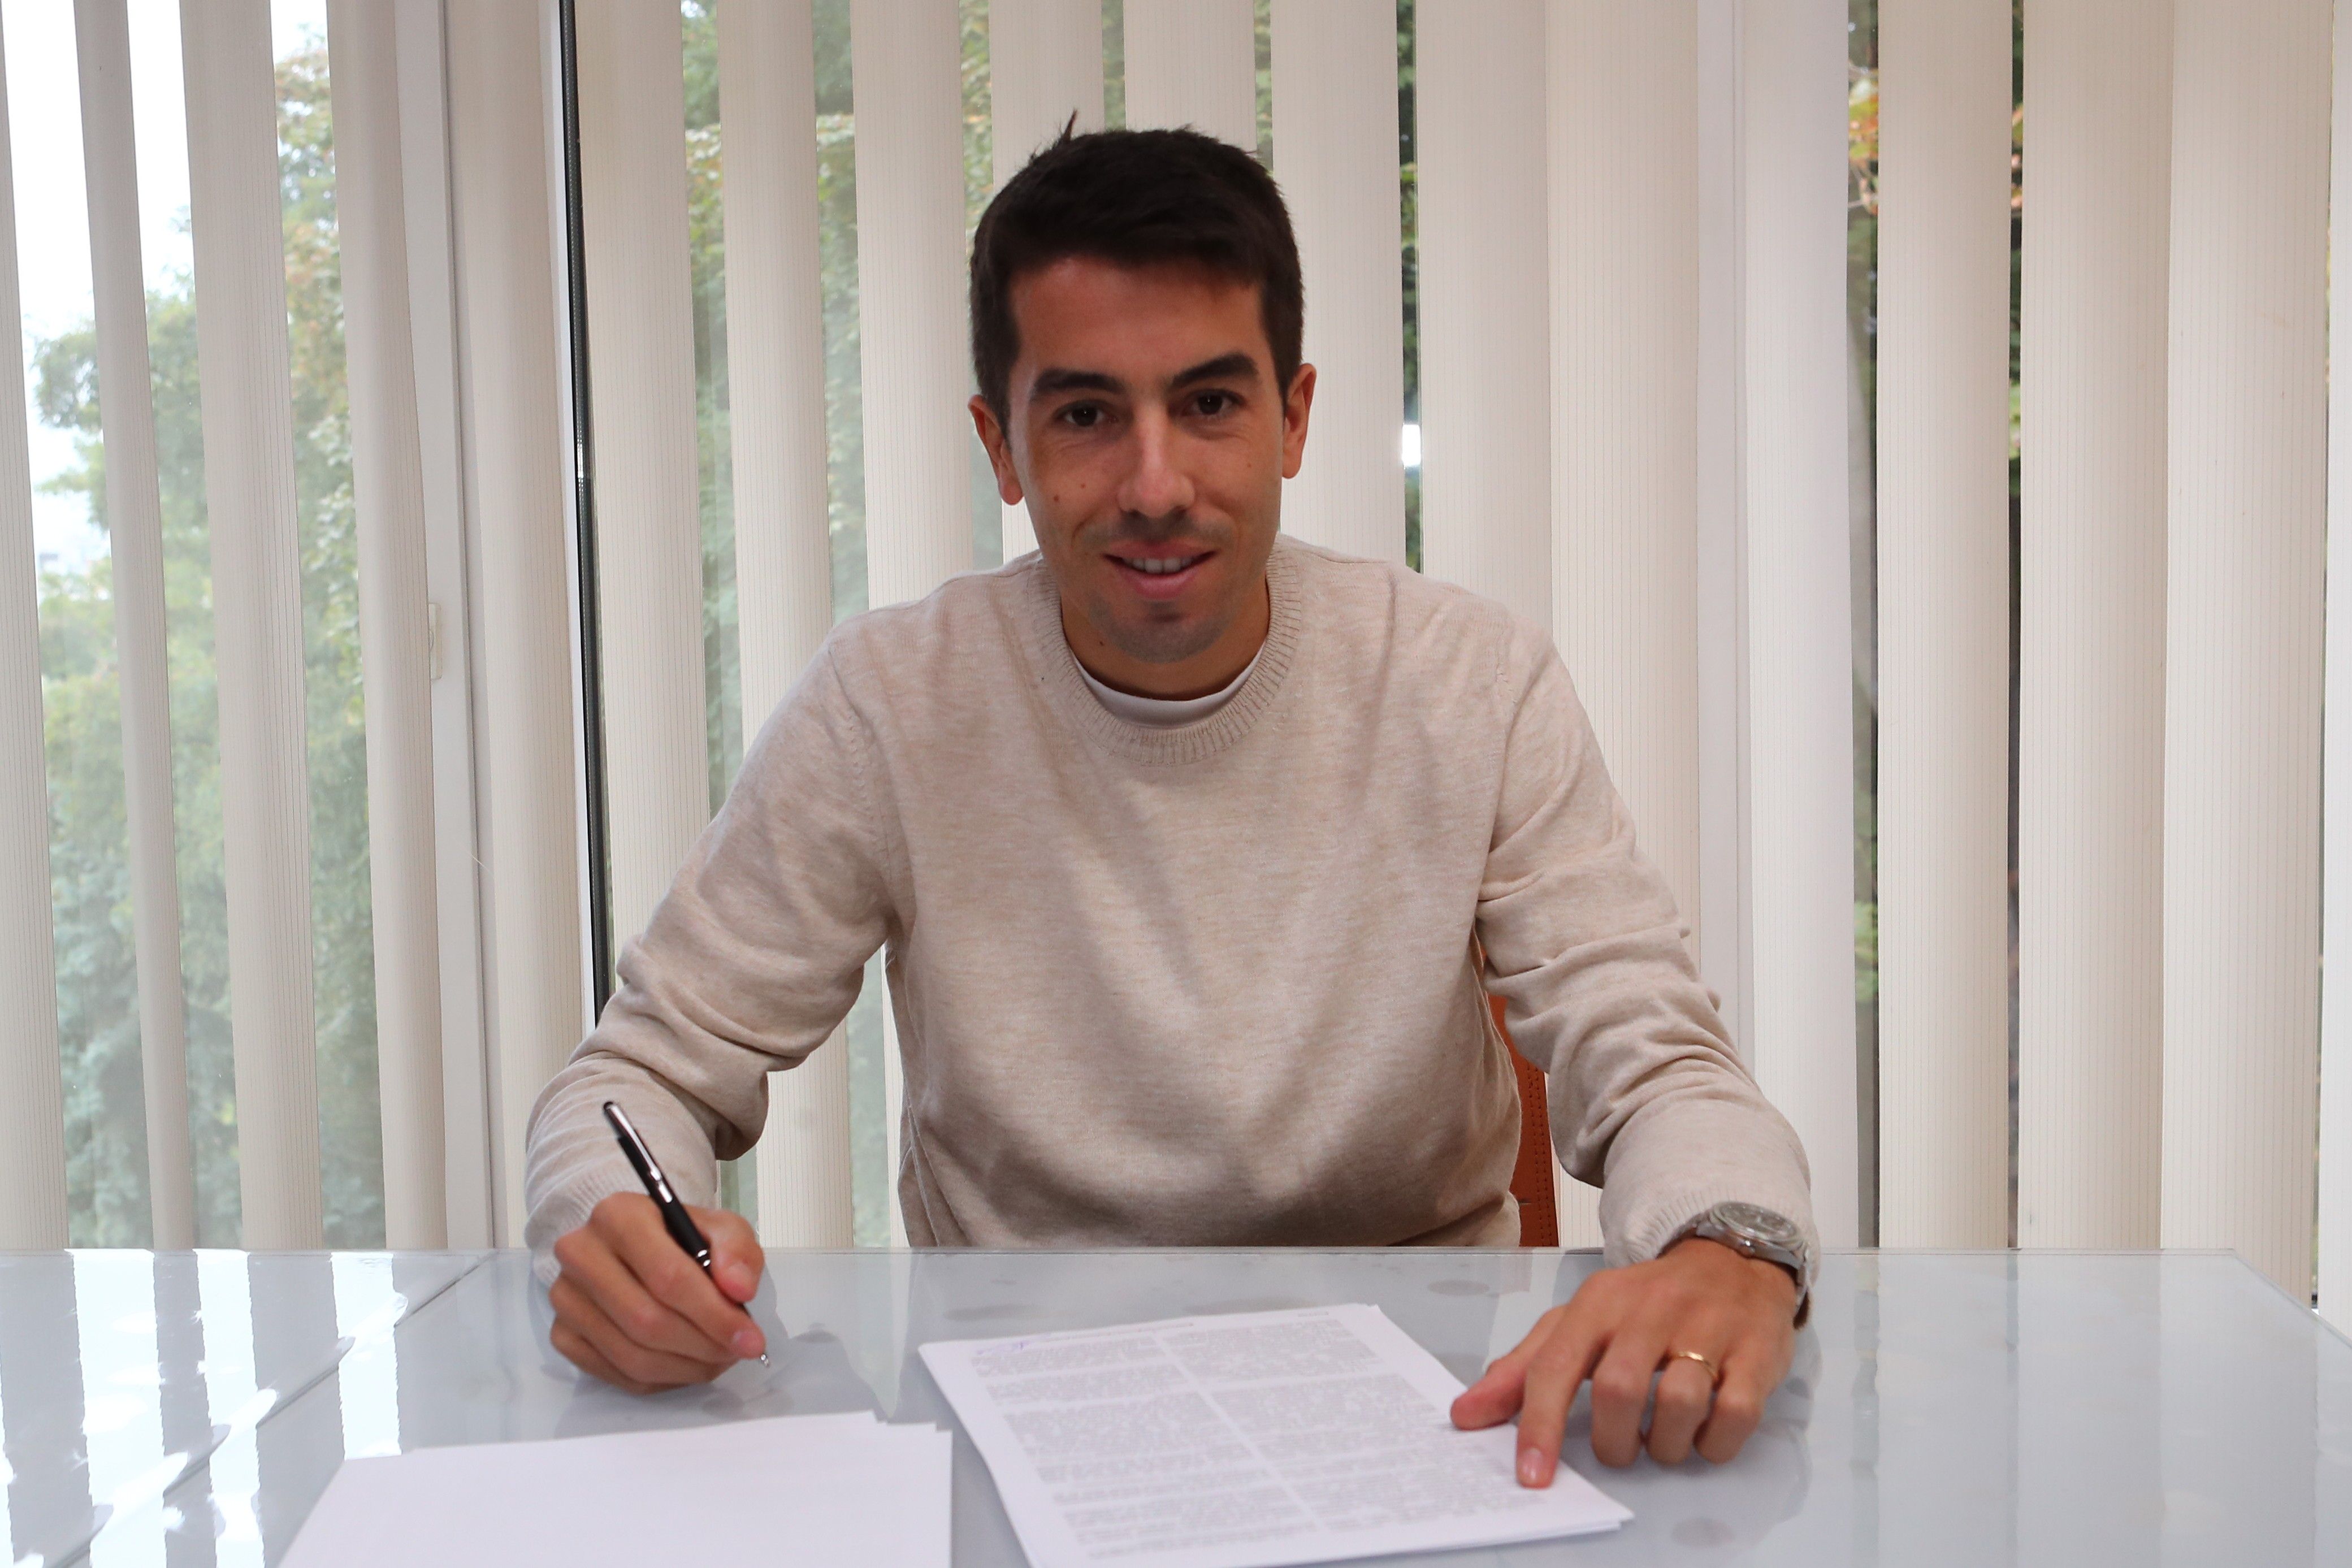 Carlos de Pena signs new contract with Dynamo